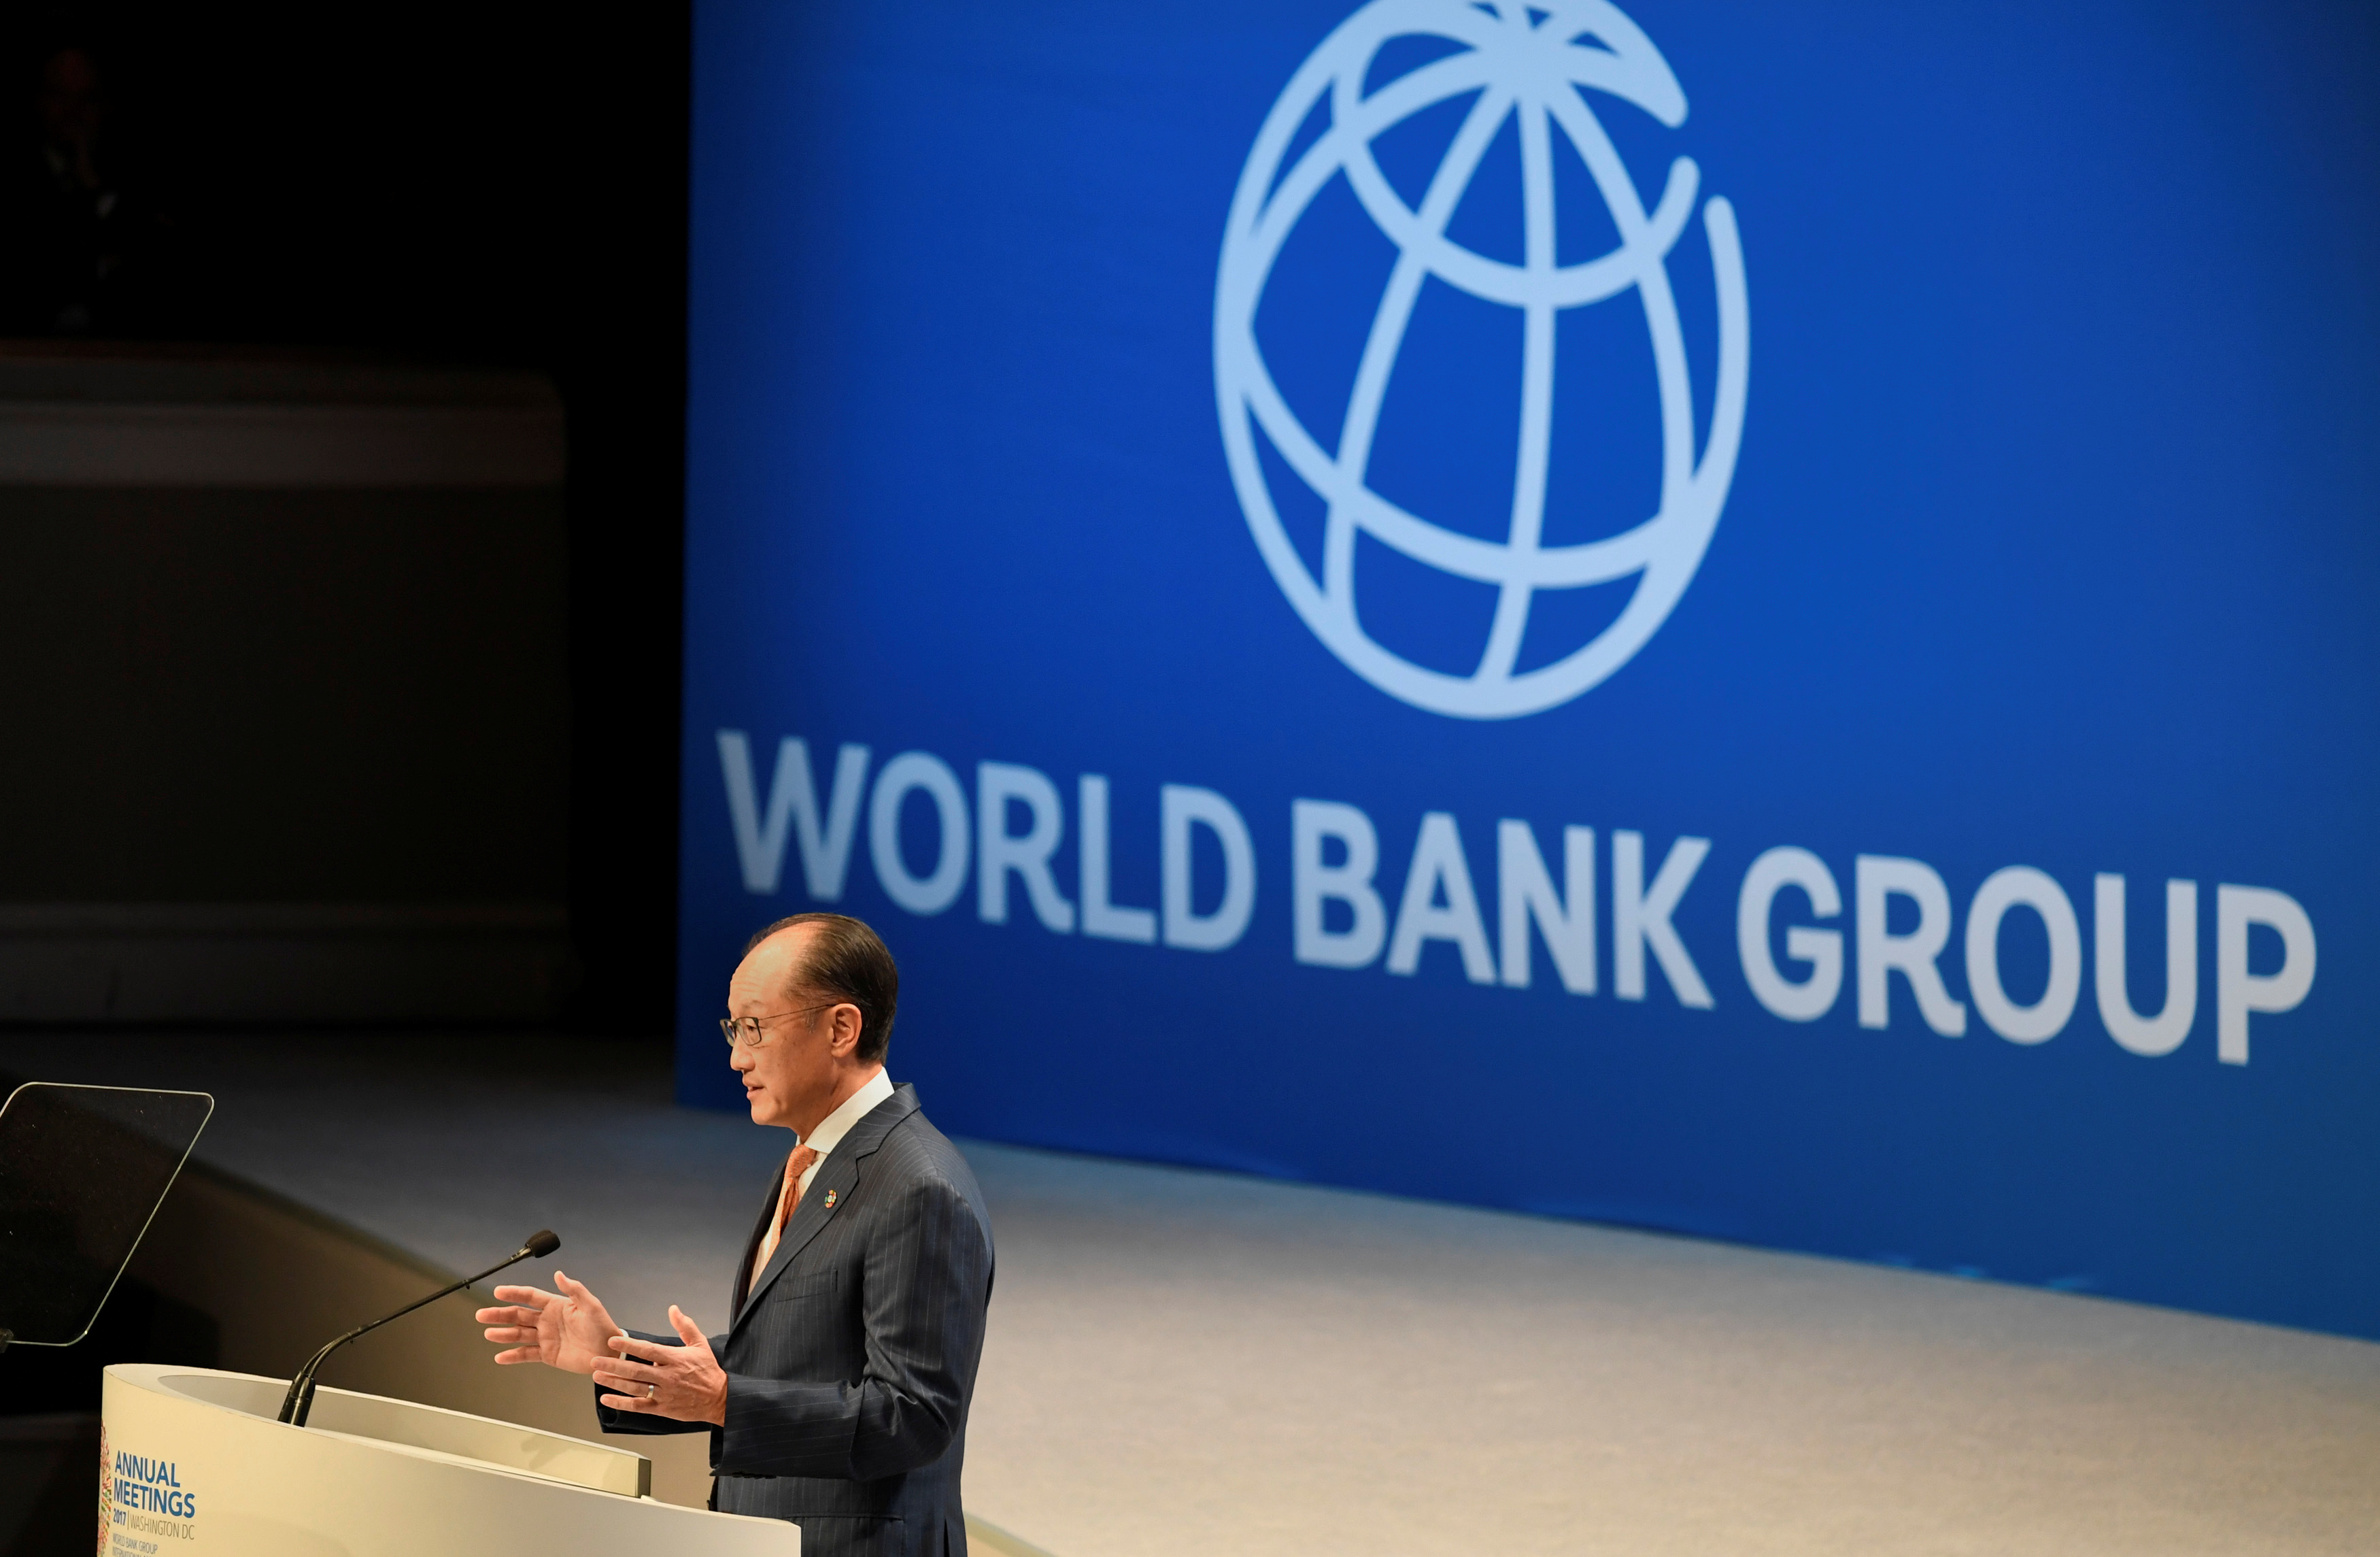 Фонд всемирный банк. Всемирного банка (the World Bank). Всемирный банк флаг. Всемирный банк и Россия. Логотип Всемирного банка.